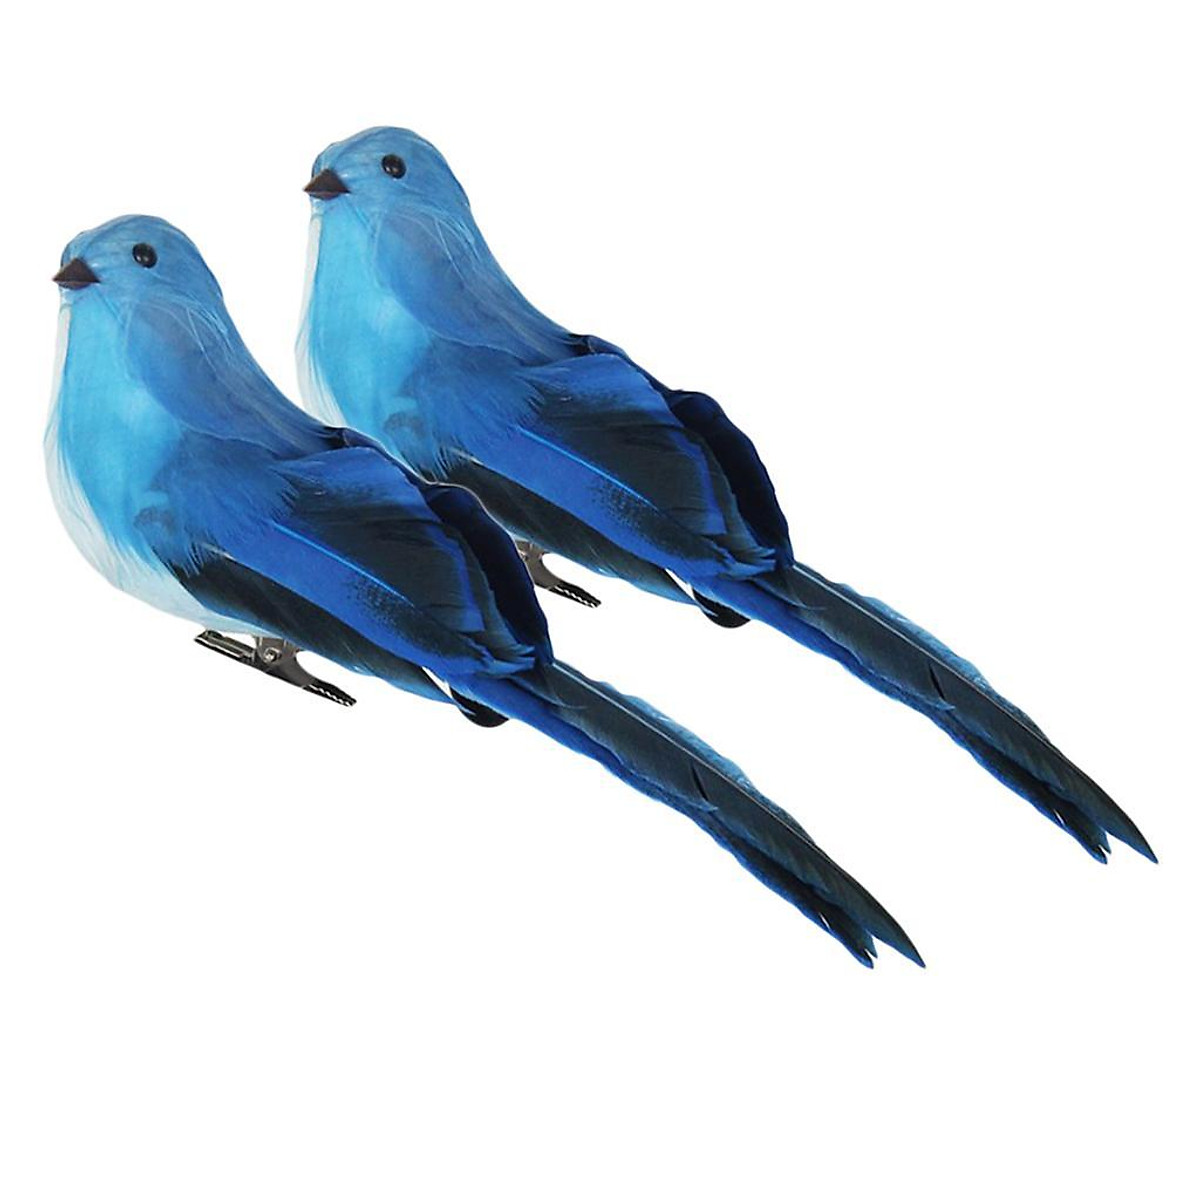 Bạn muốn tìm kiếm một sản phẩm độc đáo để làm quà tặng cho bạn bè hoặc người thân? Chim giả bằng bọt xốp màu xanh với hình dáng đáng yêu sẽ là sự lựa chọn hoàn hảo. Hãy xem ảnh để cảm nhận sự độc đáo và tinh tế của sản phẩm này.